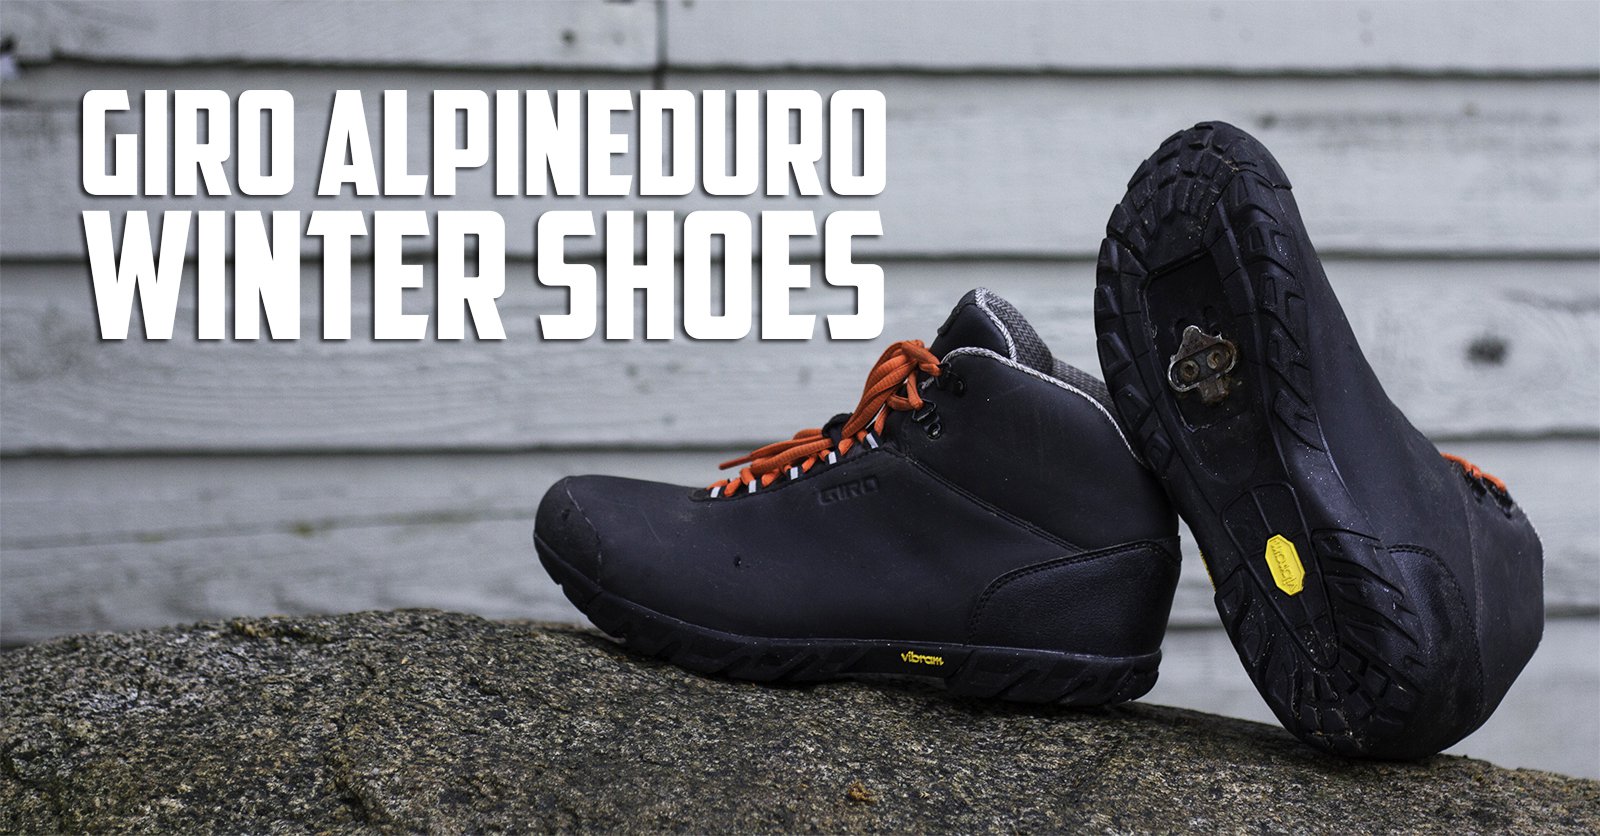 Giro Alpineduro Winter Shoes